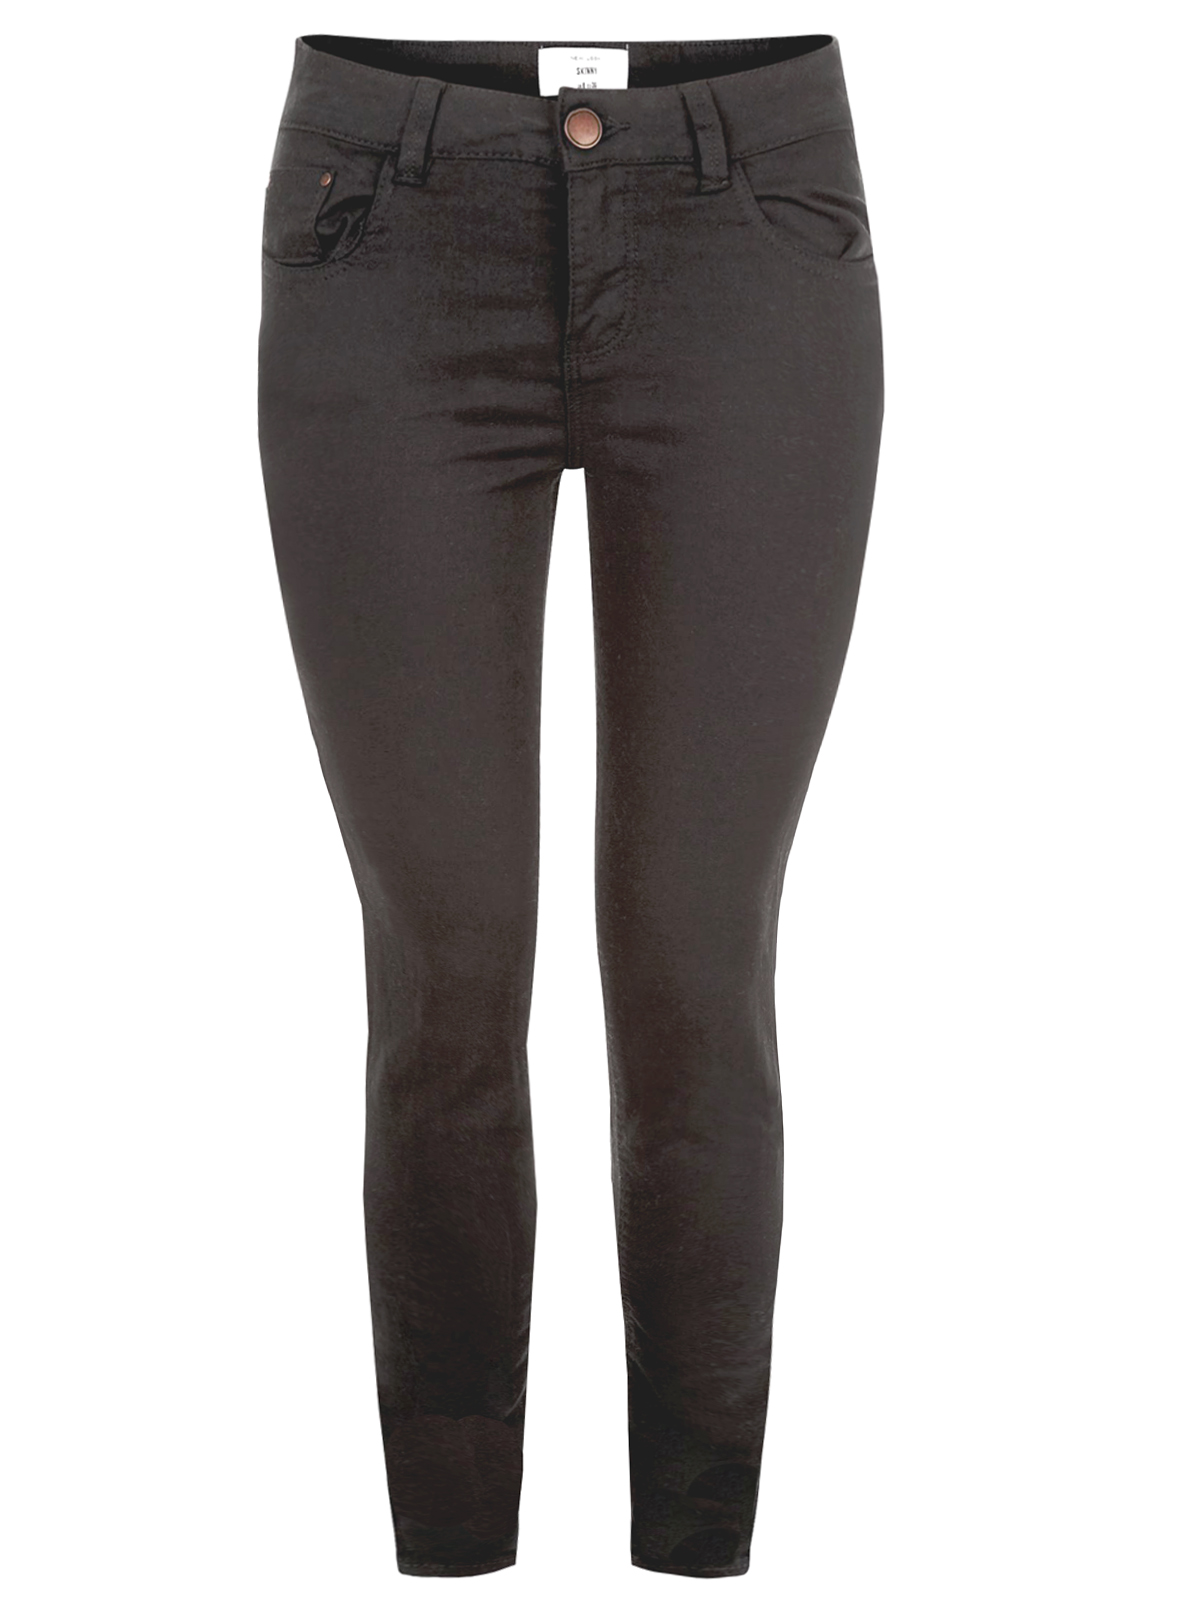 N3w L00k BLACK Assorted Skinny Fit Denim Jeans - Plus Size 16 to 32